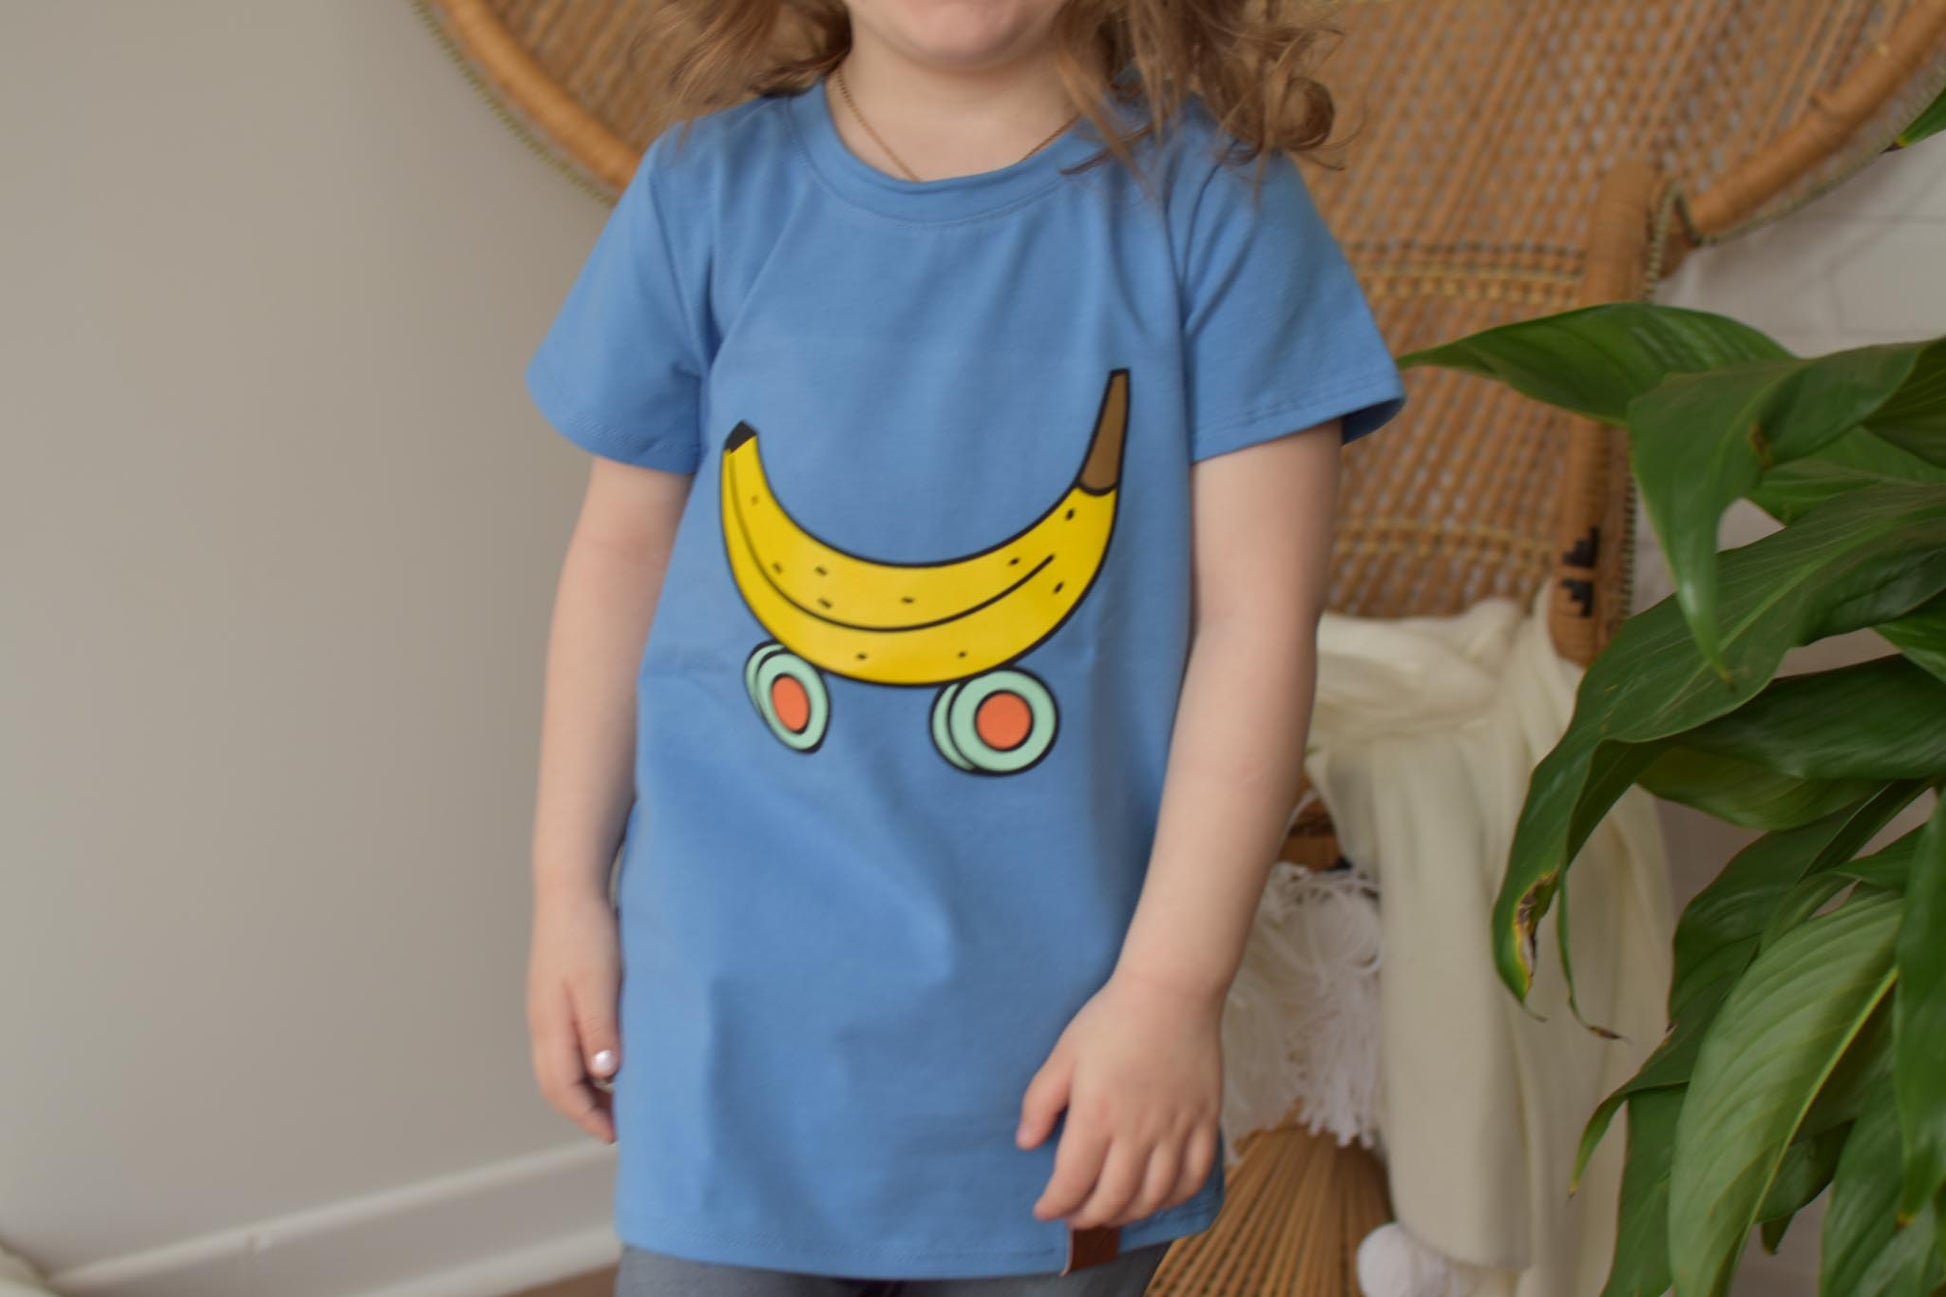 T-shirt patin banane enfant Nine Clothing t-shirt kids banana skate